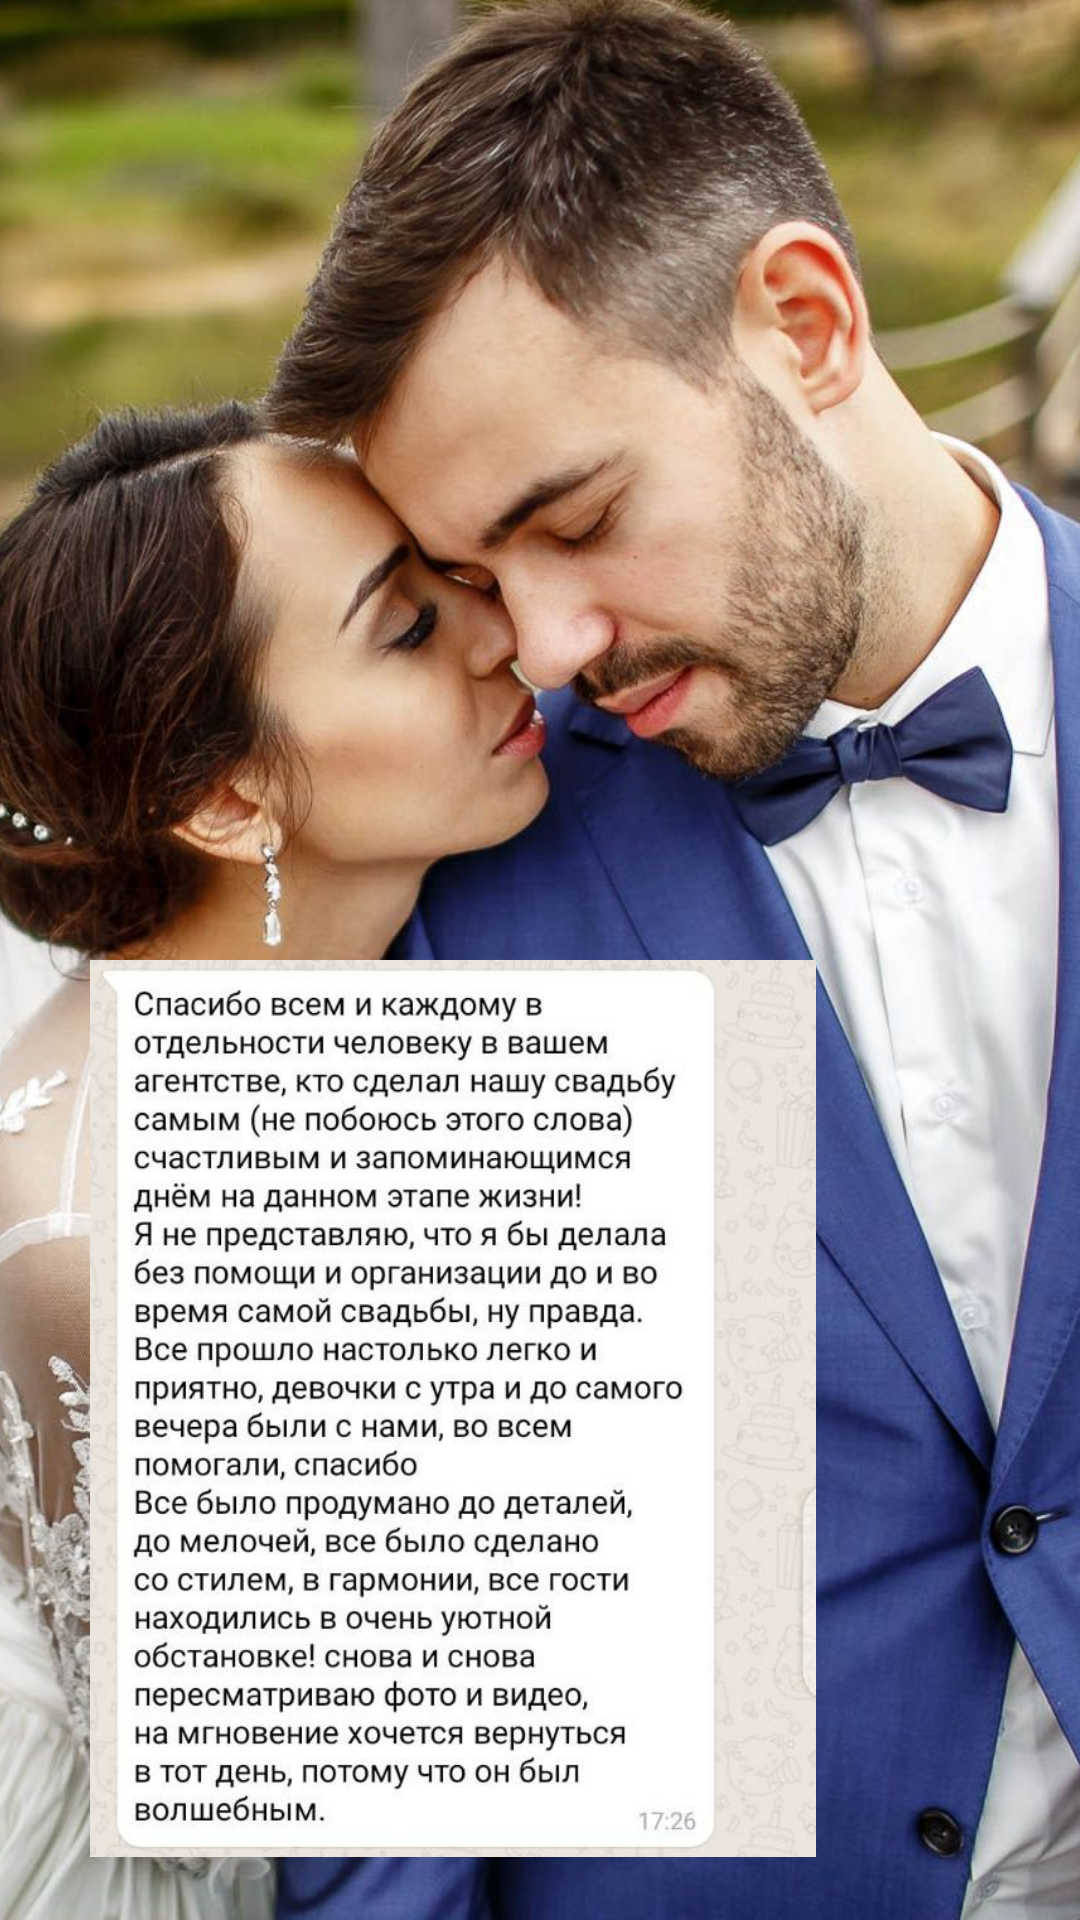 Организация свадьбы в Якутске
от компании Pandaevent